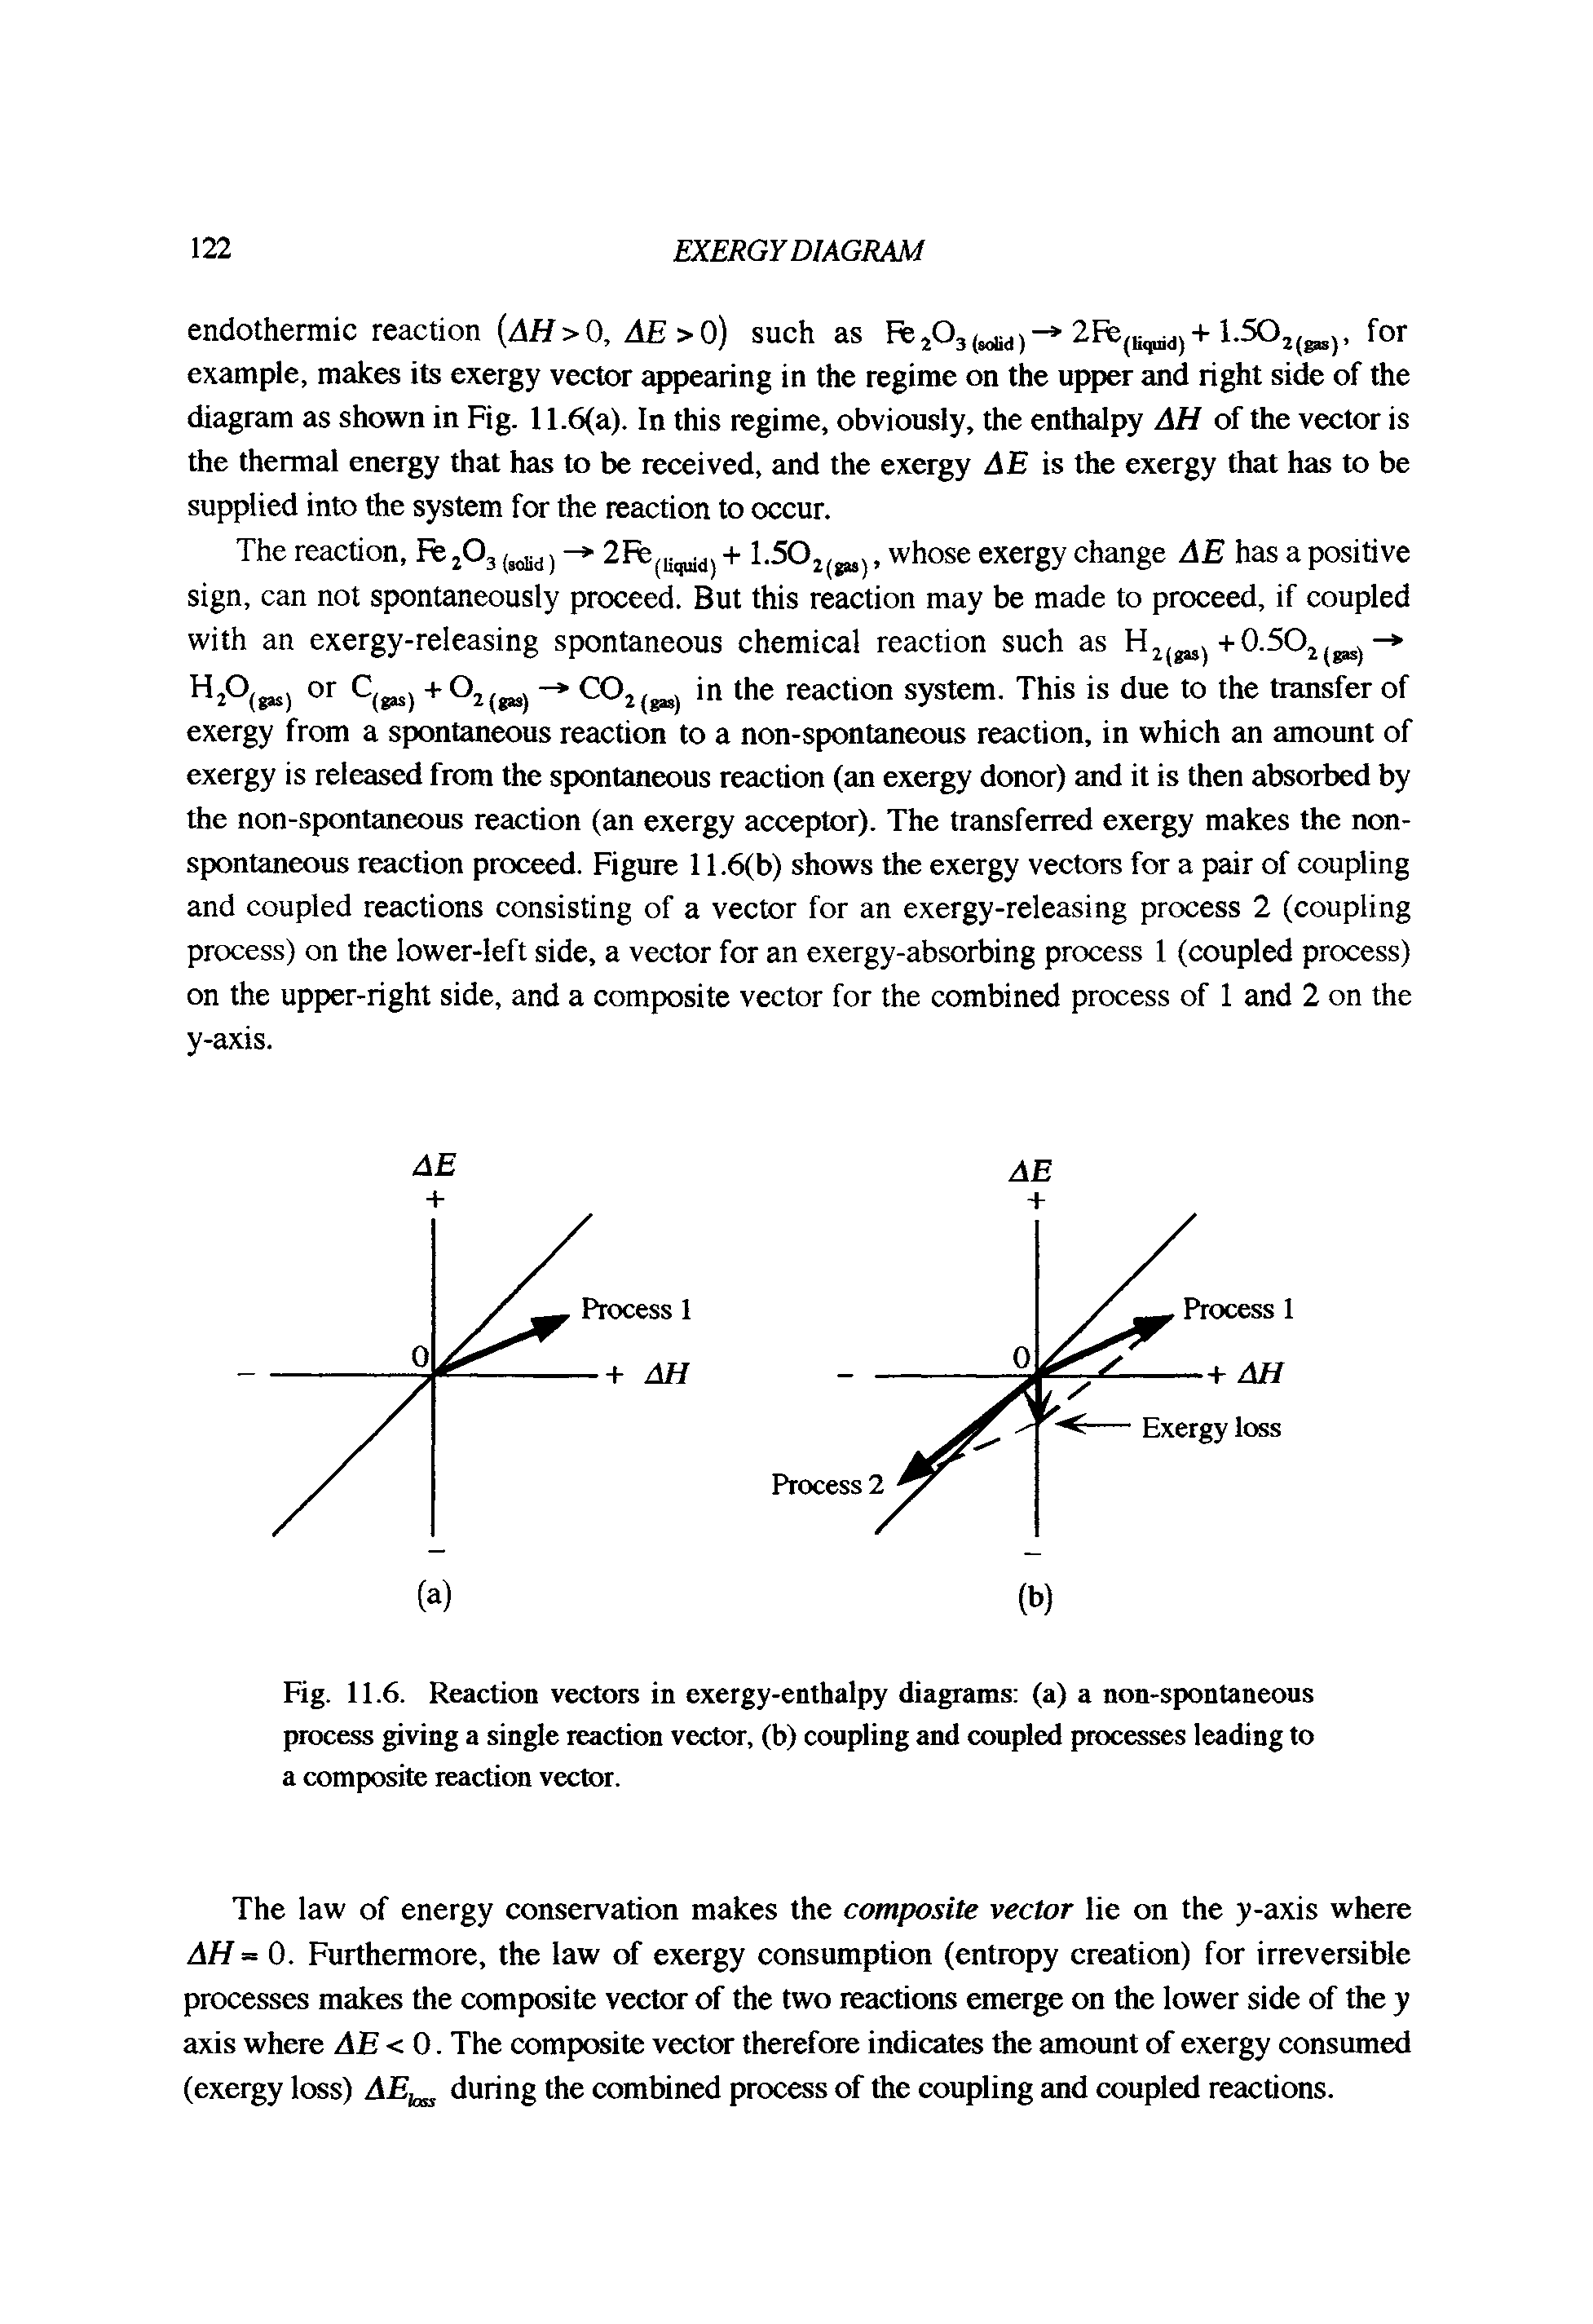 Fig. 11.6. Reaction vectors in exergy-enthalpy diagrams (a) a non-spontaneous process giving a single reaction vector, (b) coupling and coupled processes leading to a composite reaction vector.